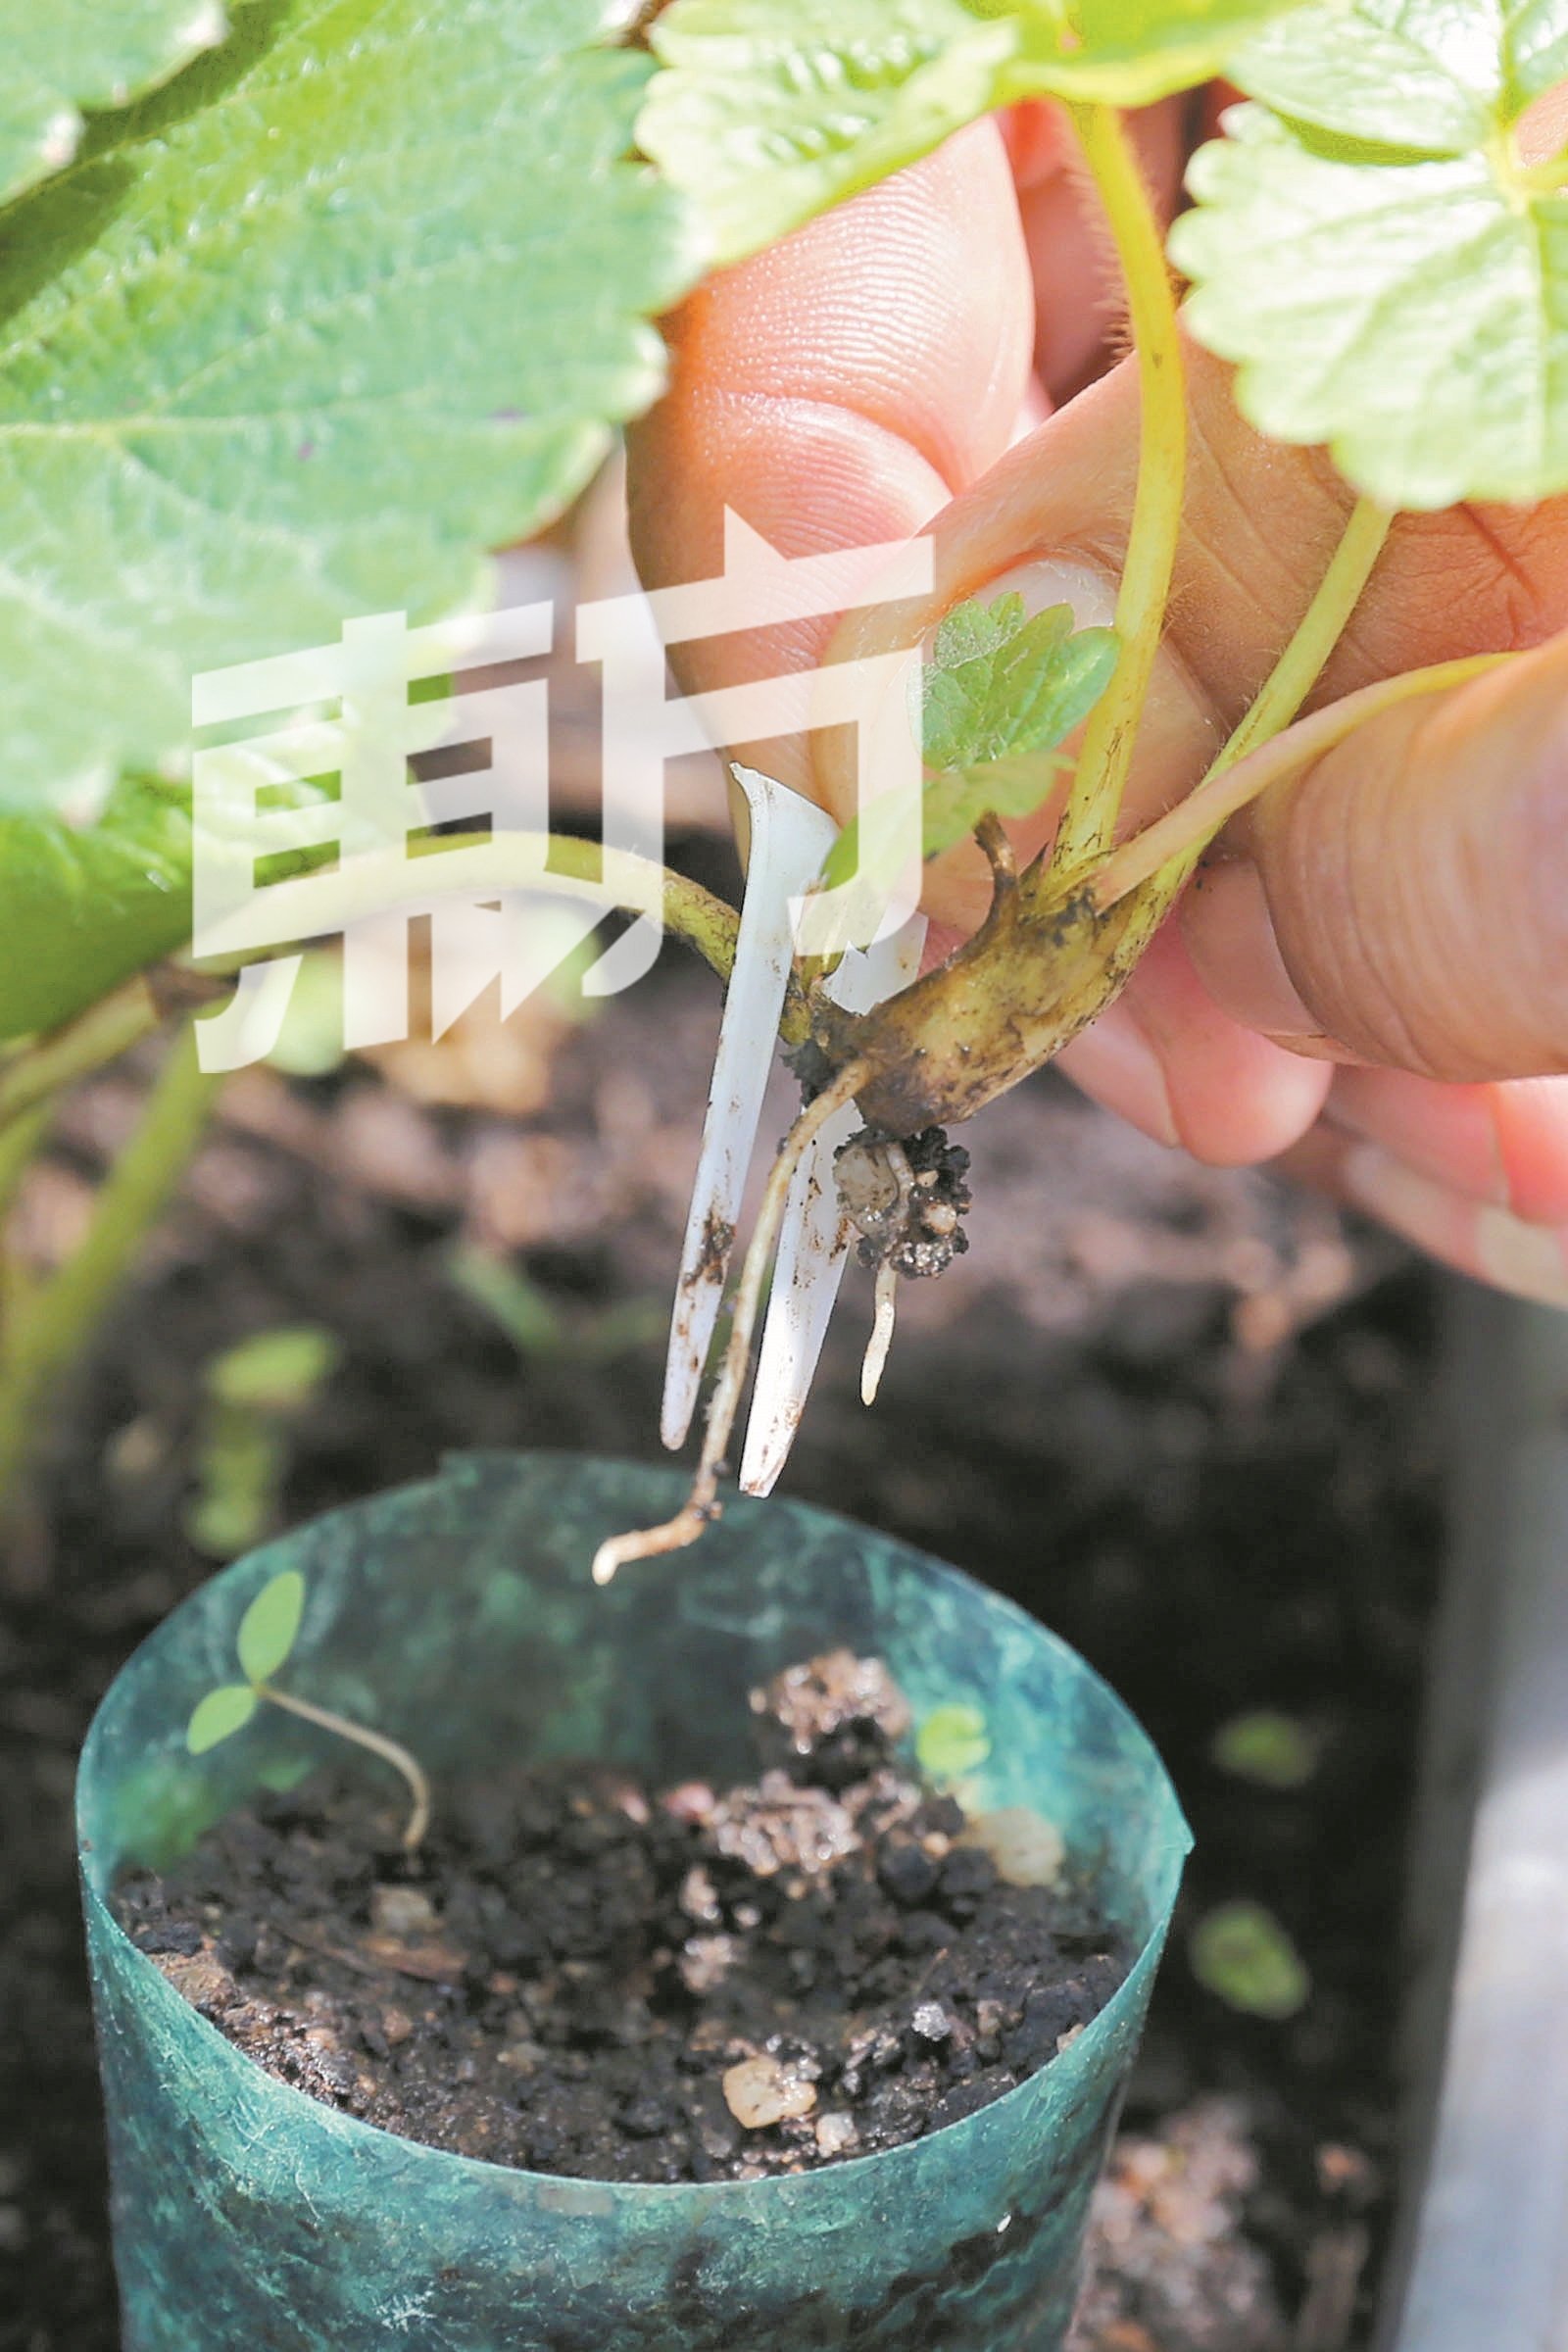 郑光伟利用塑料叉子将匍匐茎苗固定在泥土内，让它生根。（摄影：刘维杰）